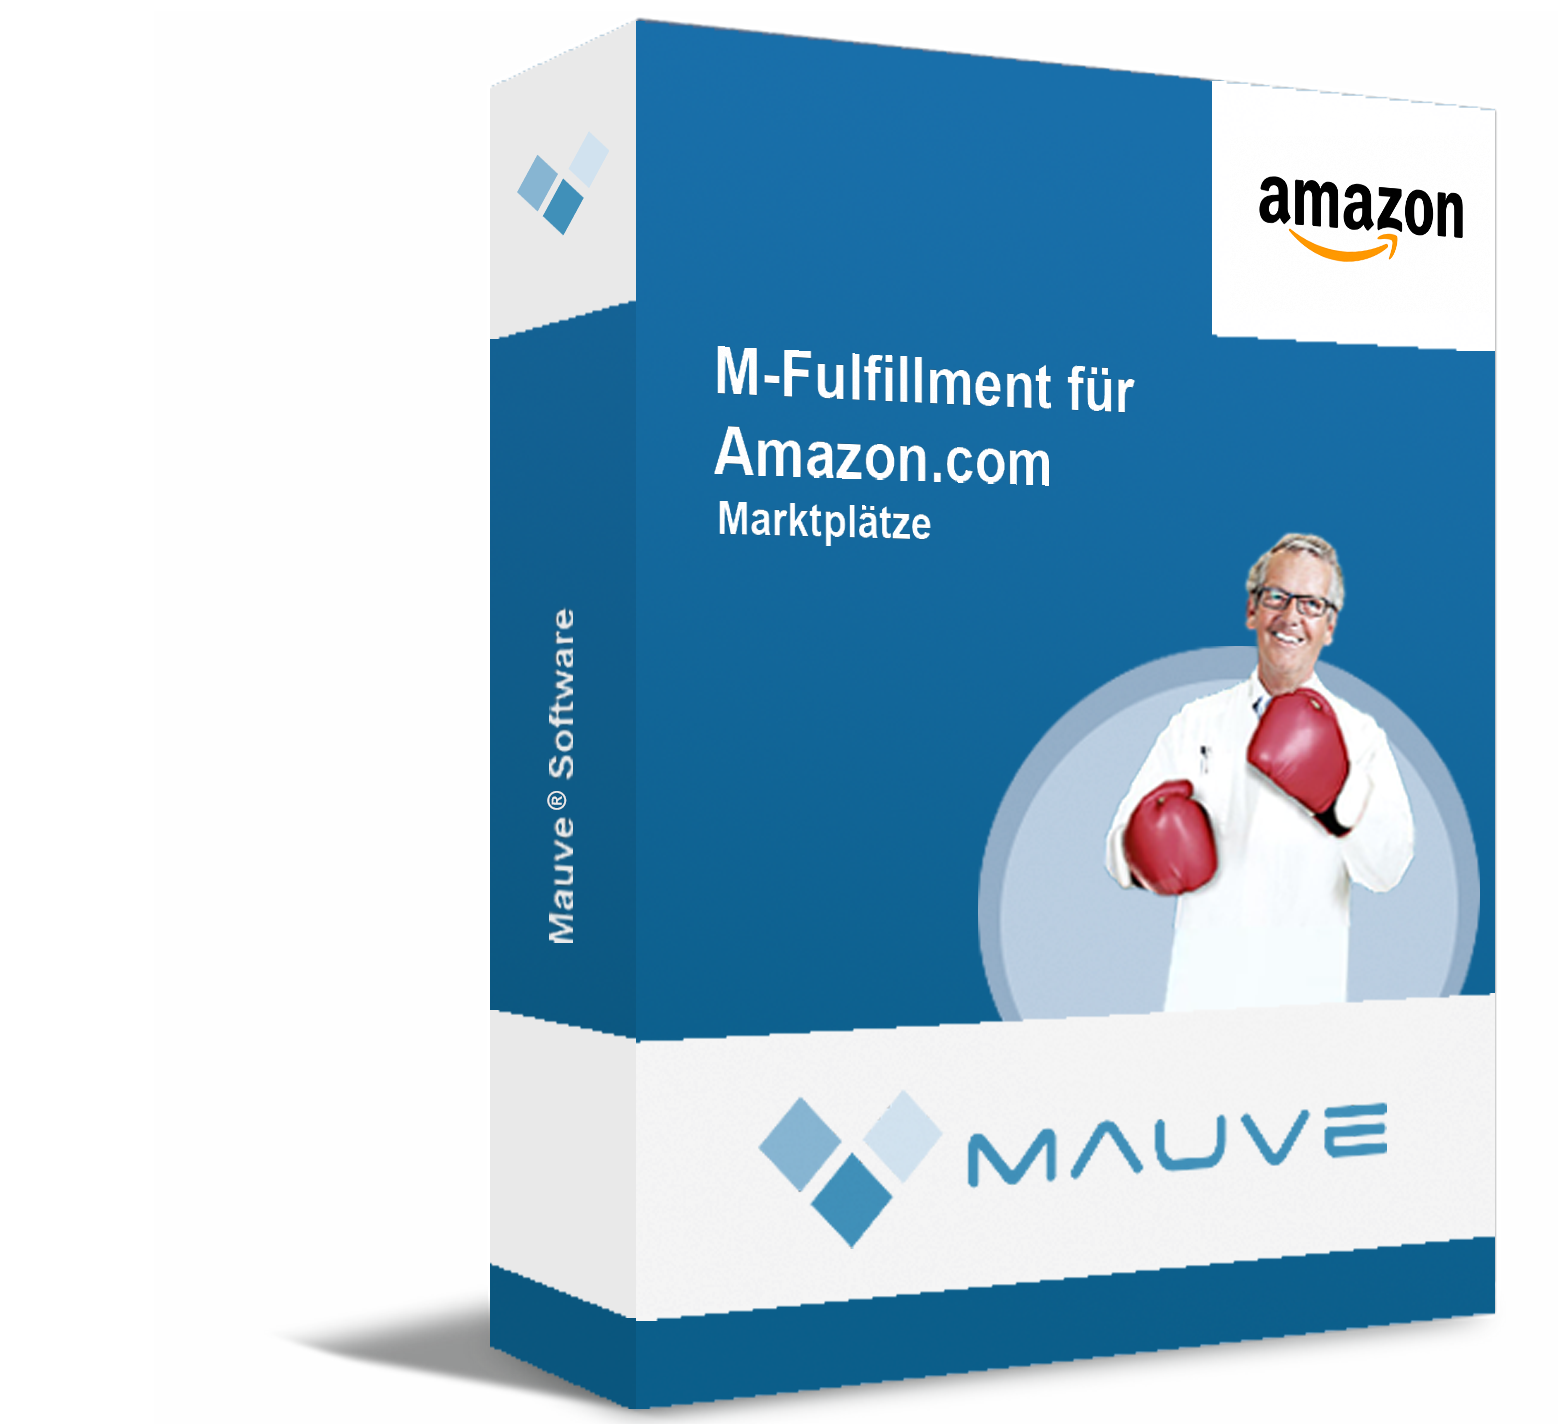 M-Fulfillment für Amazon.com